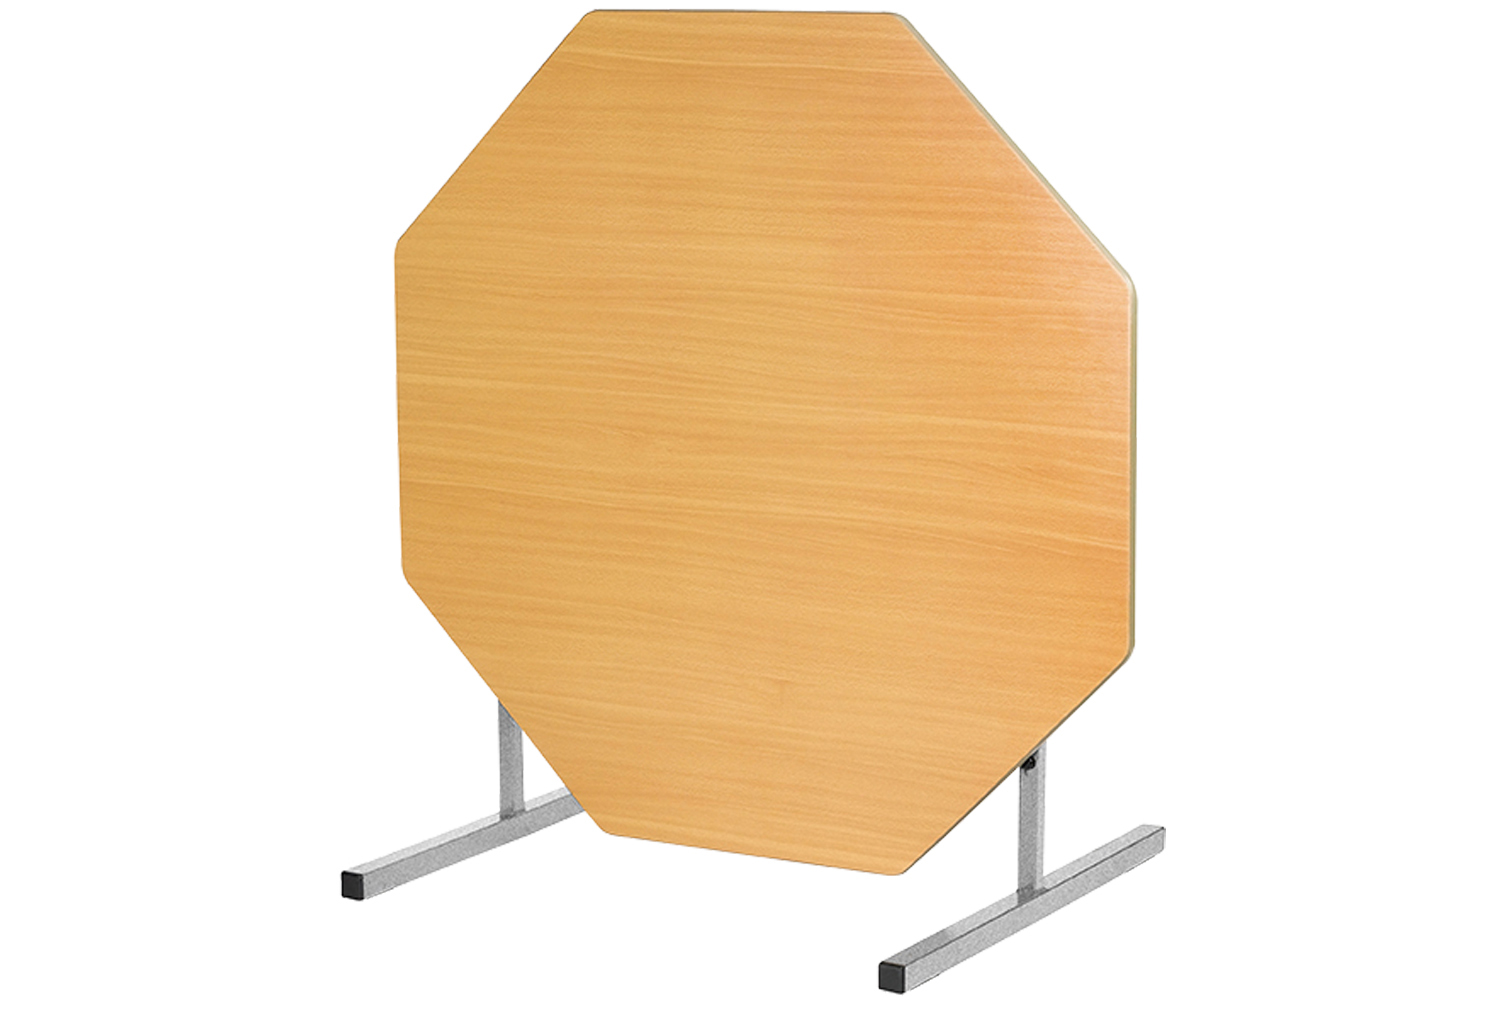 Qty 2 - Octagonal Tilt Top Classroom Tables, 14+ Years - 120diax76h (cm), Beech